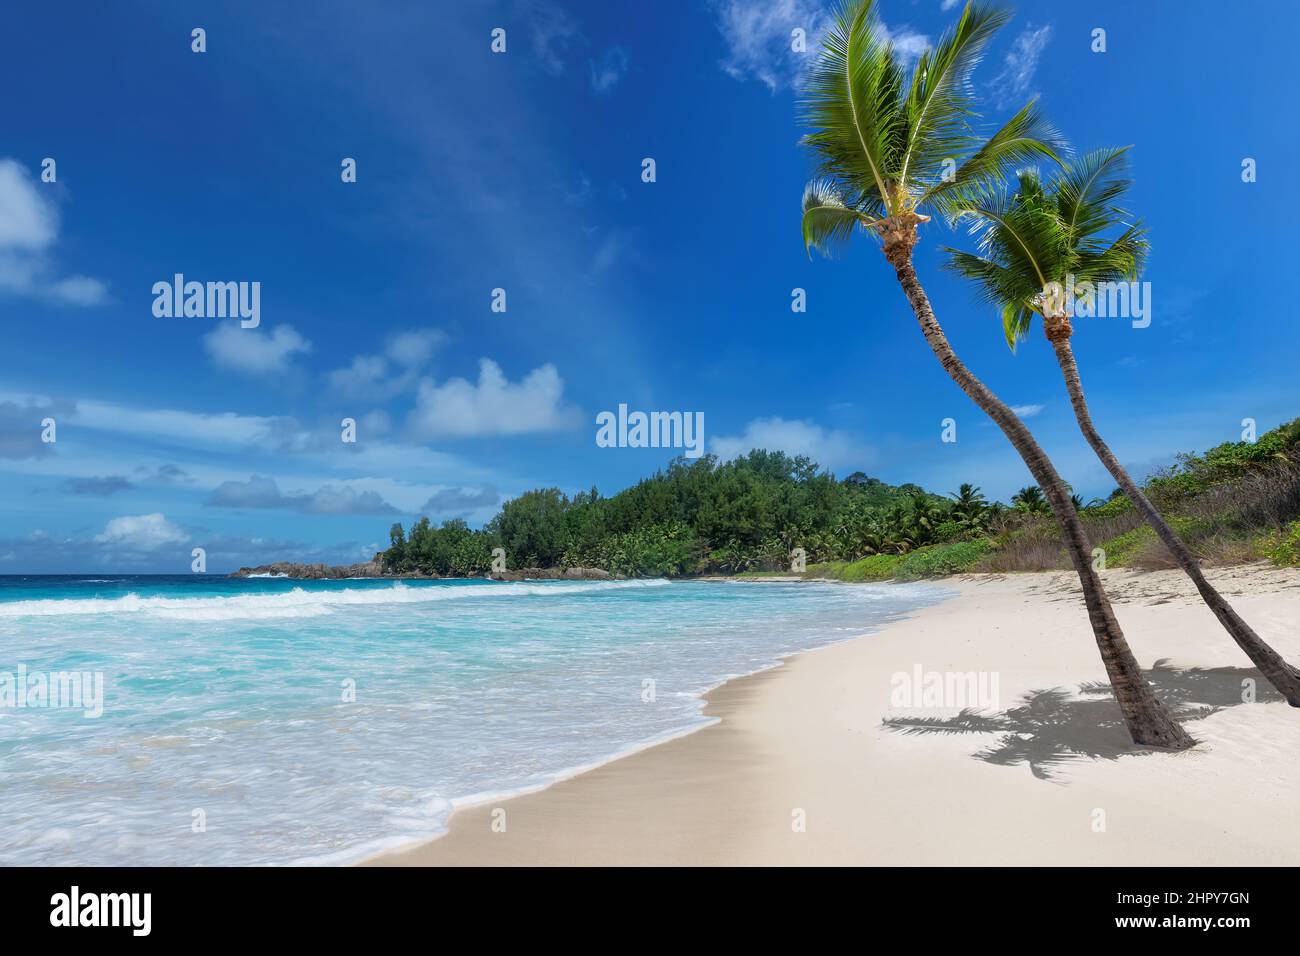 Playa de arena blanca tropical y el mar turquesa en la isla caribeña. Foto de stock